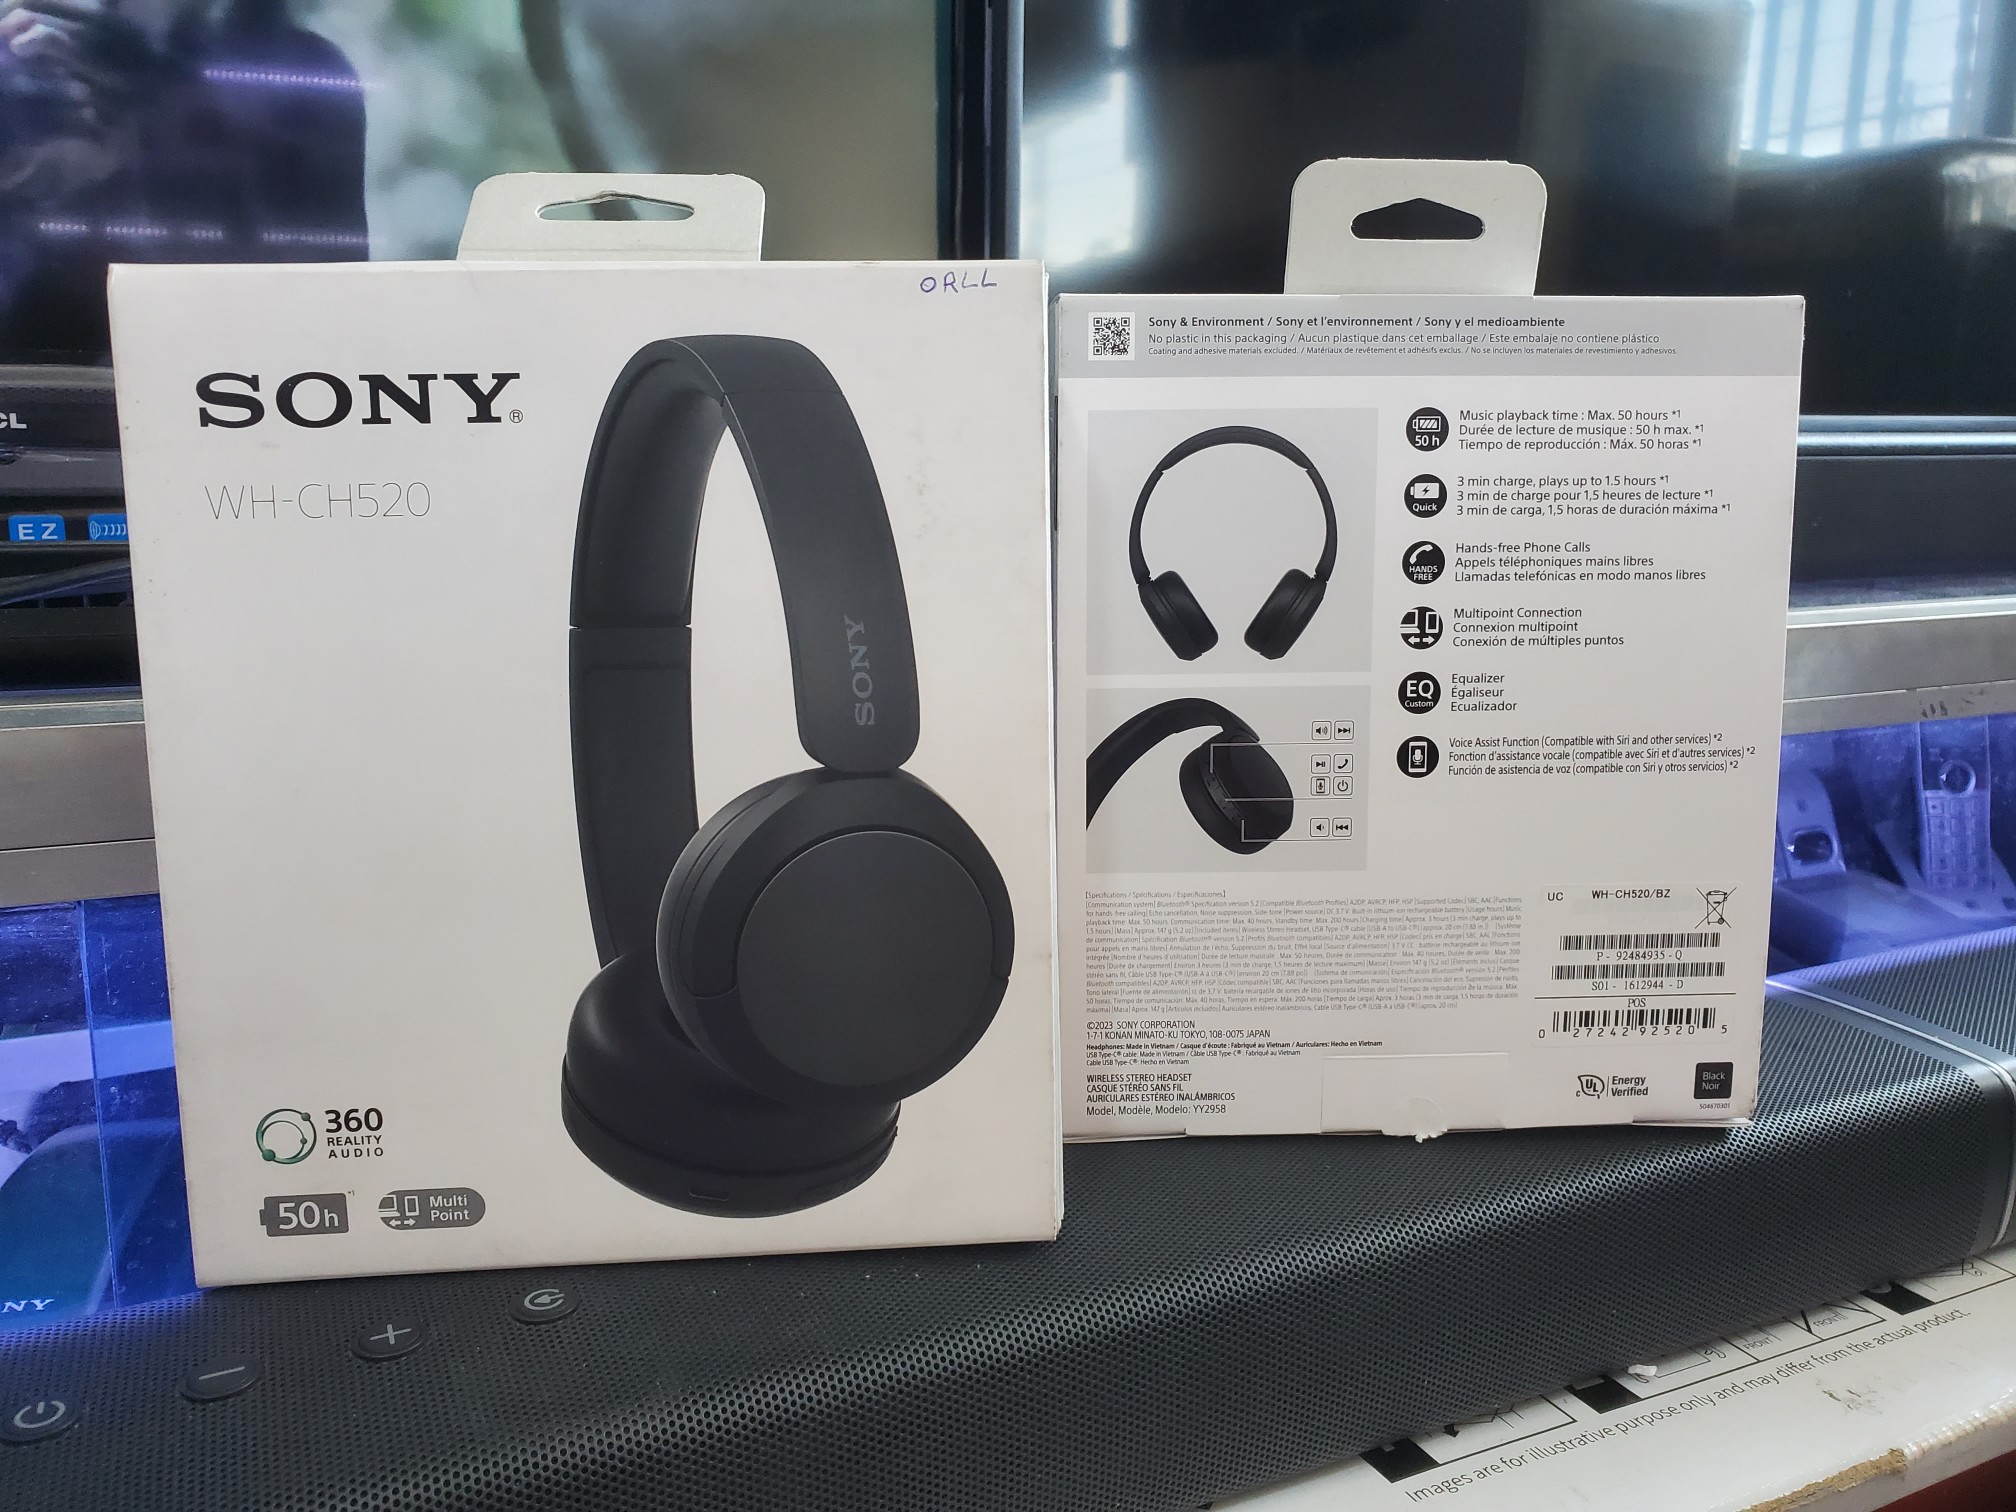 camaras y audio - Sony WH-CH520 audífonos inalambrico con micrófono integrado 0